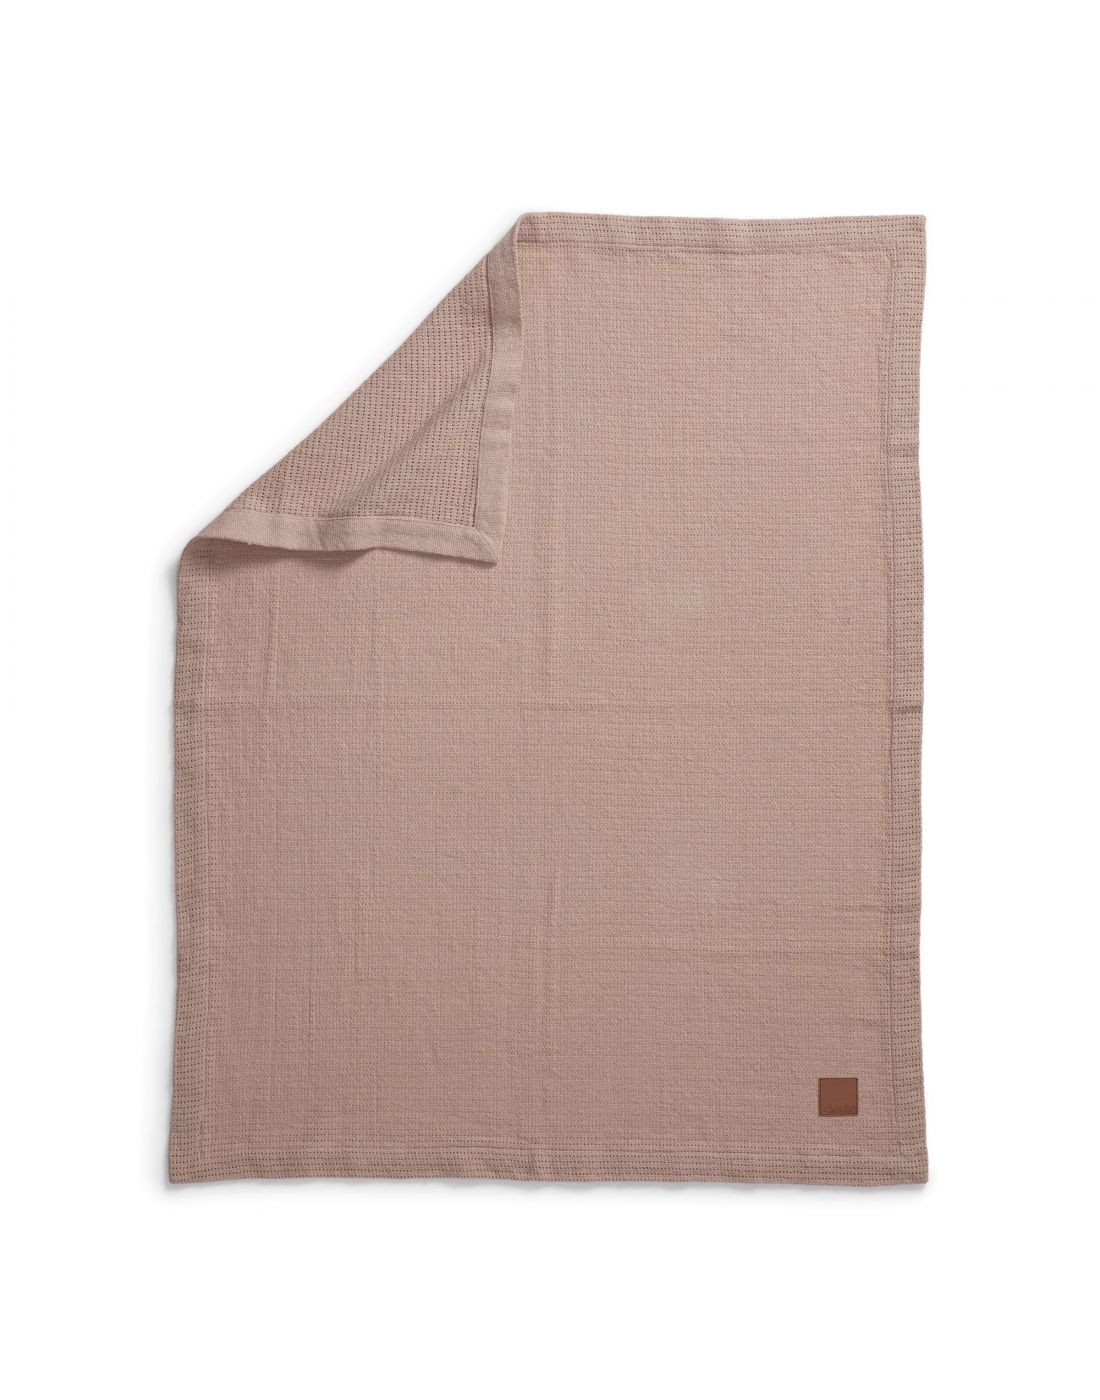 Elodie DetailsBaby  Ceccular Blanket Powder Pink